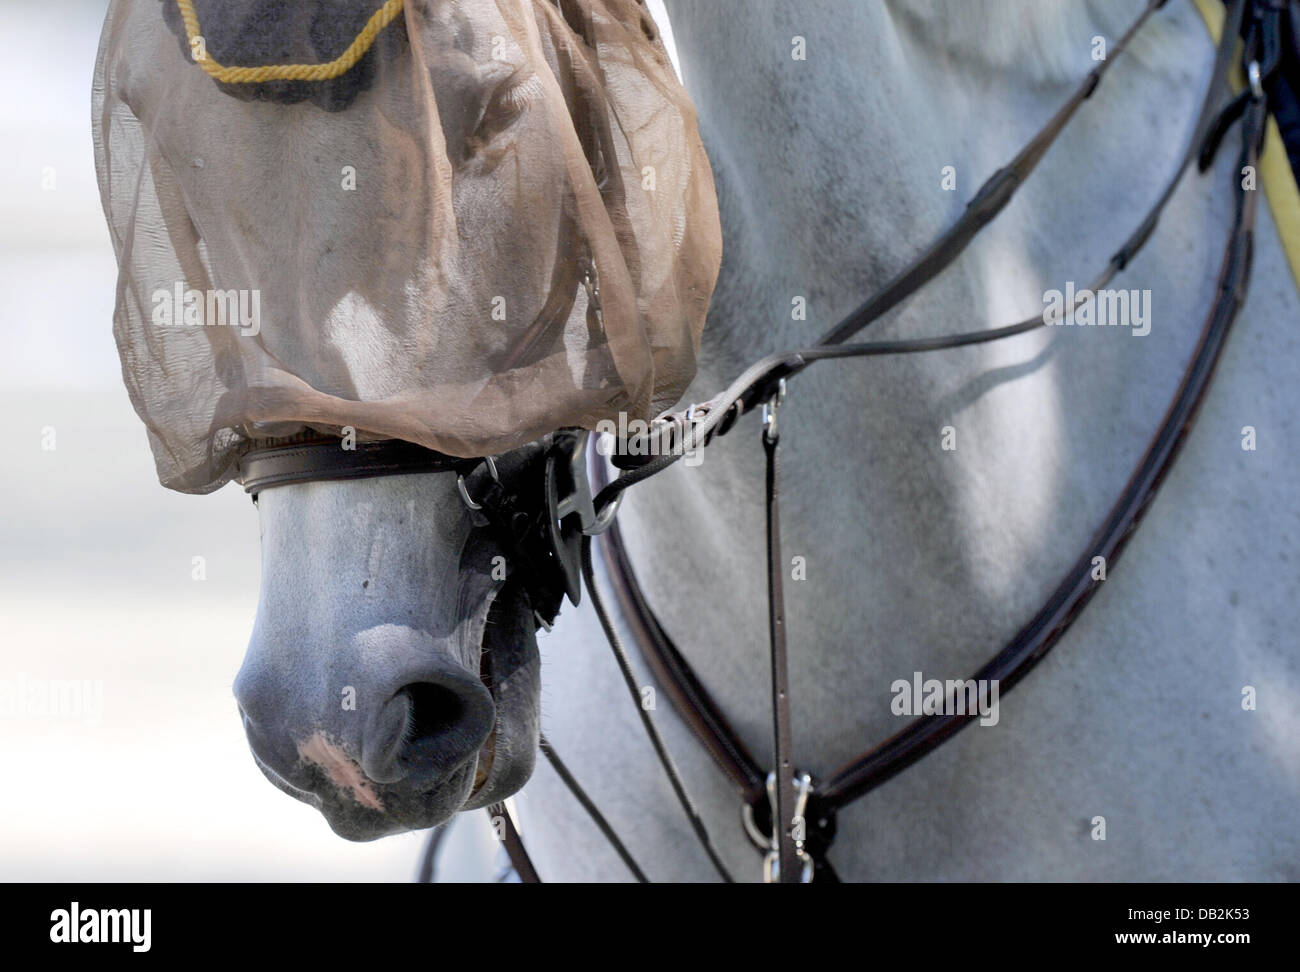 Ein Pferd hat zum Schutz vor Fliegen am Mittwoch (14.09.2011) bei der Europameisterschaft der Springreiter in Madrid ein Netz auf dem Kopf. Foto: Jochen Lübke dpa Stock Photo